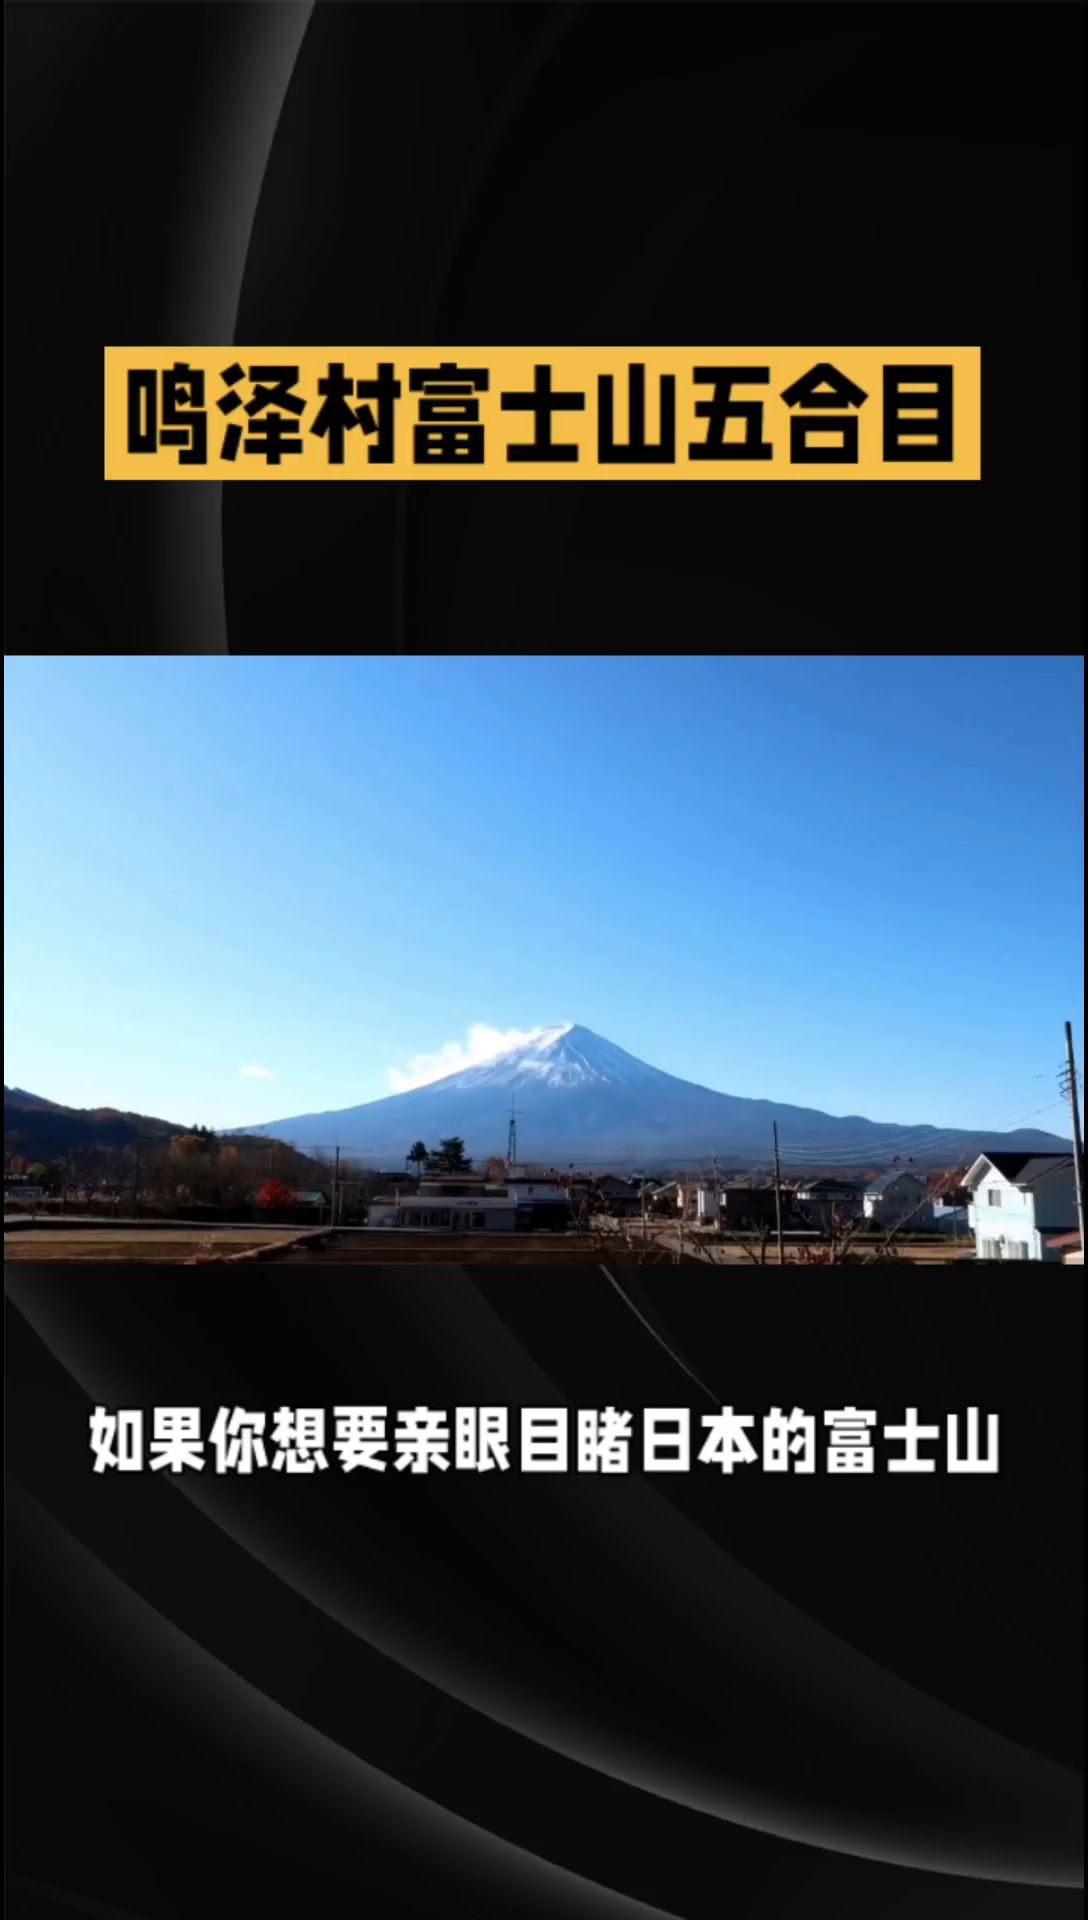 欣赏富士山全貌,鸣泽村五合目绝佳位置